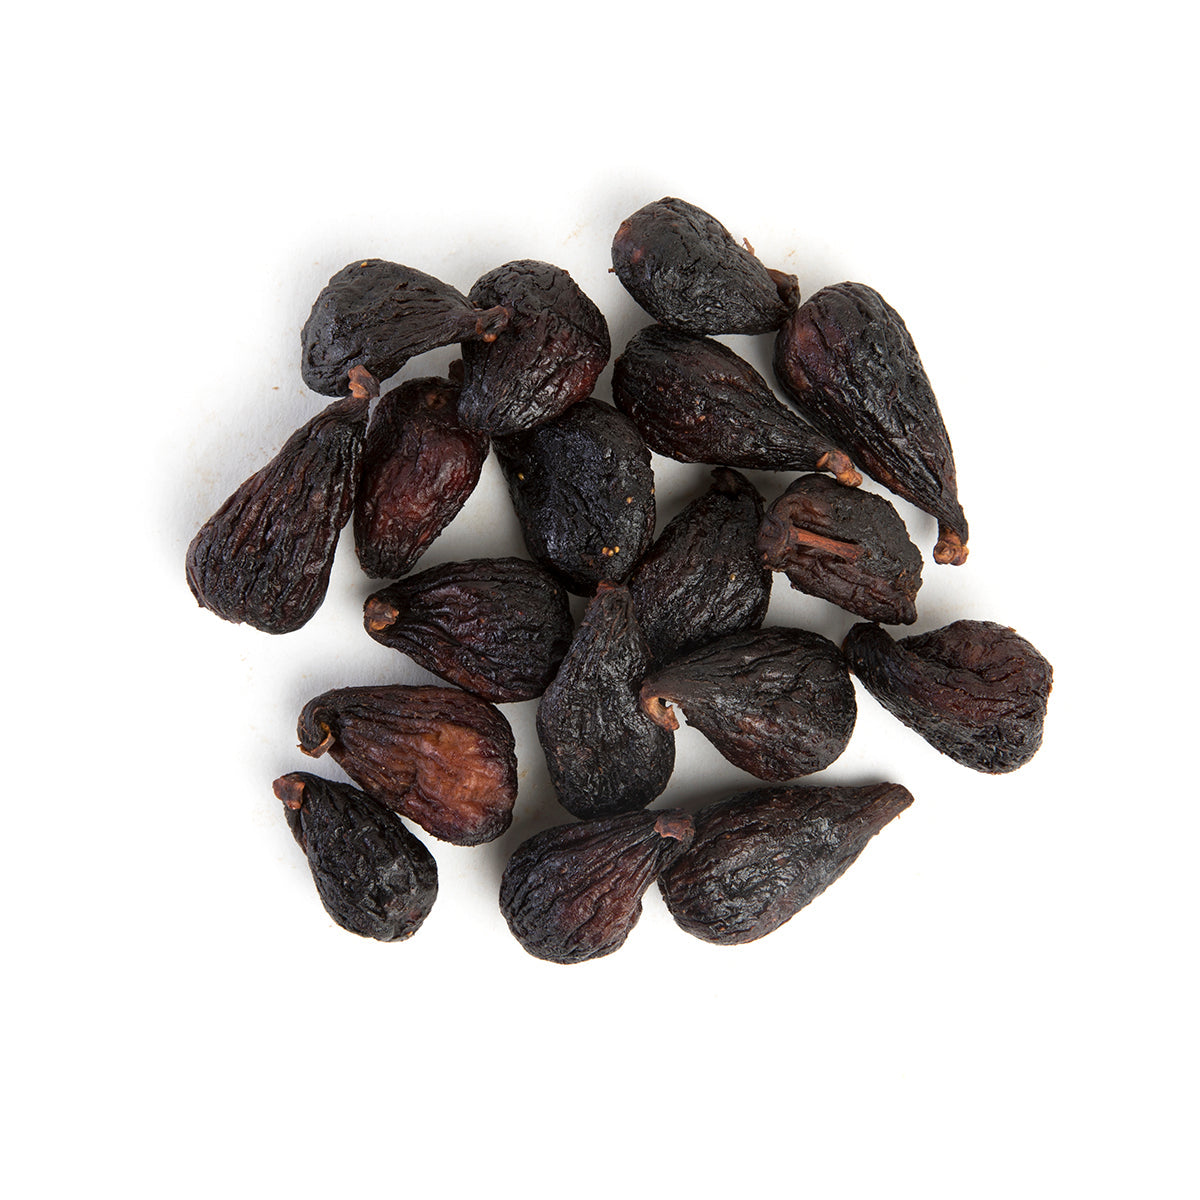 Bazzini Dried Mission Figs